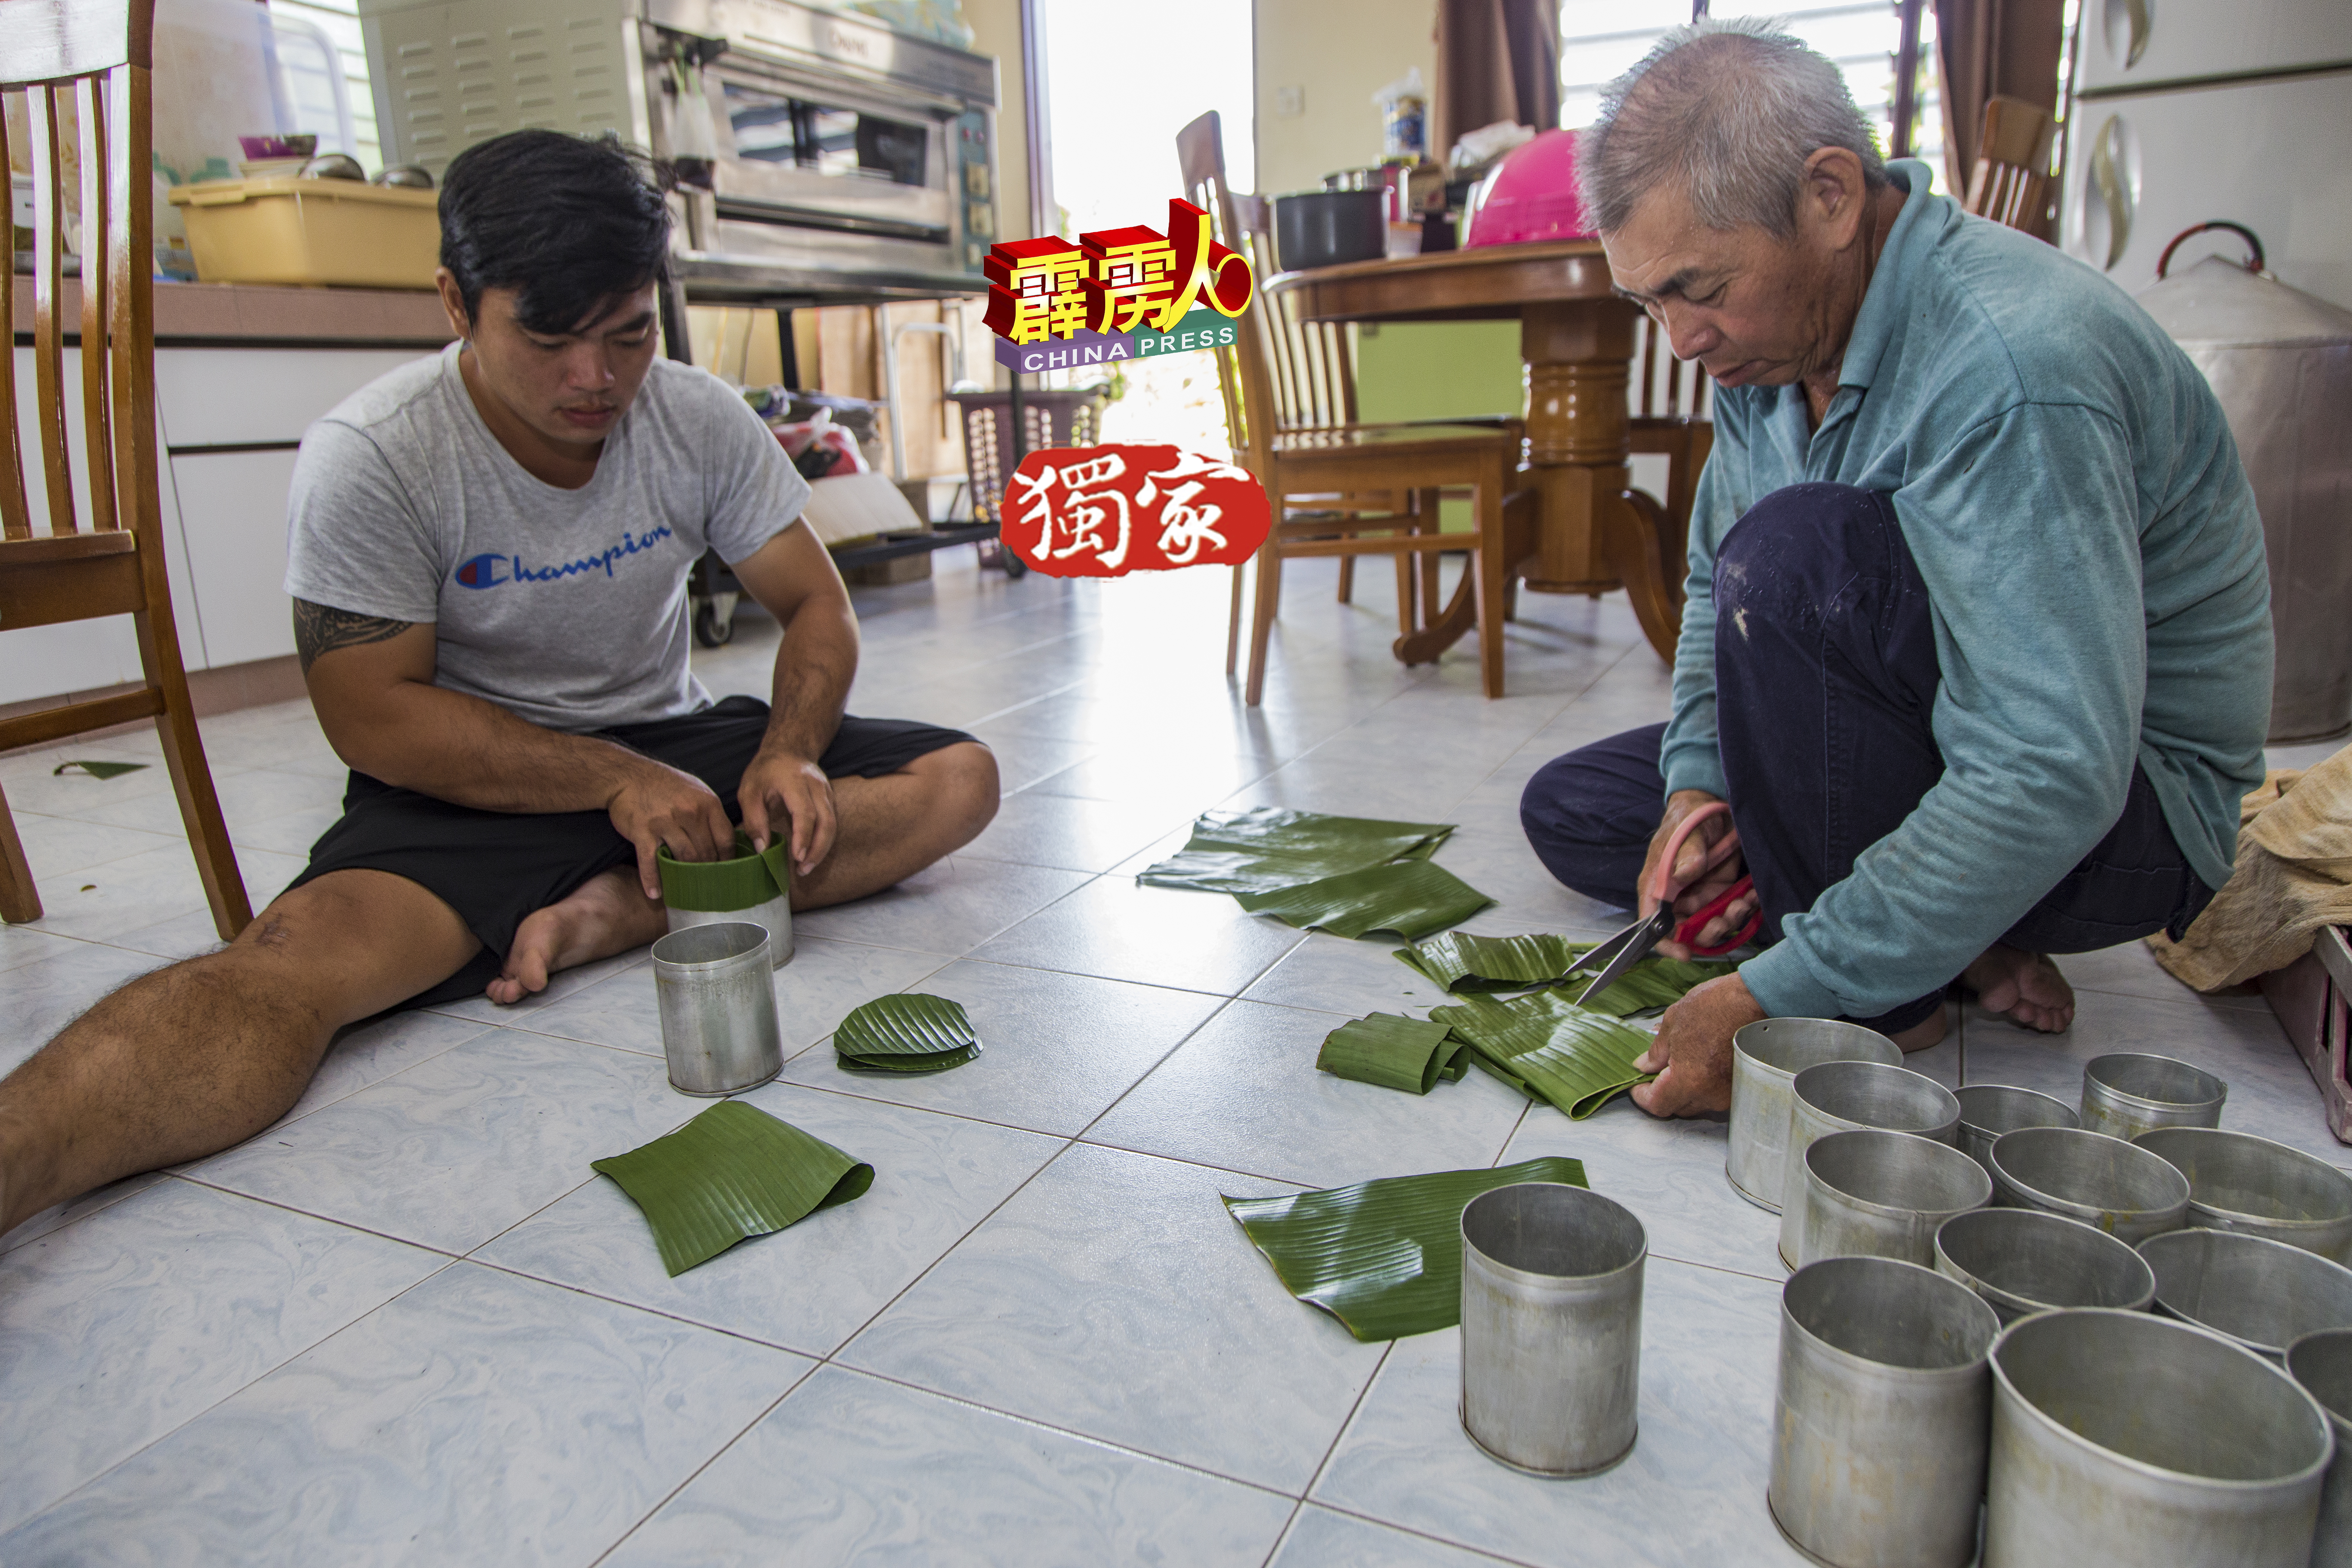 郑观福剪綵蕉叶的合适尺寸，儿子郑志豪则把蕉叶置入罐内，作为包裹年糕的外衣。